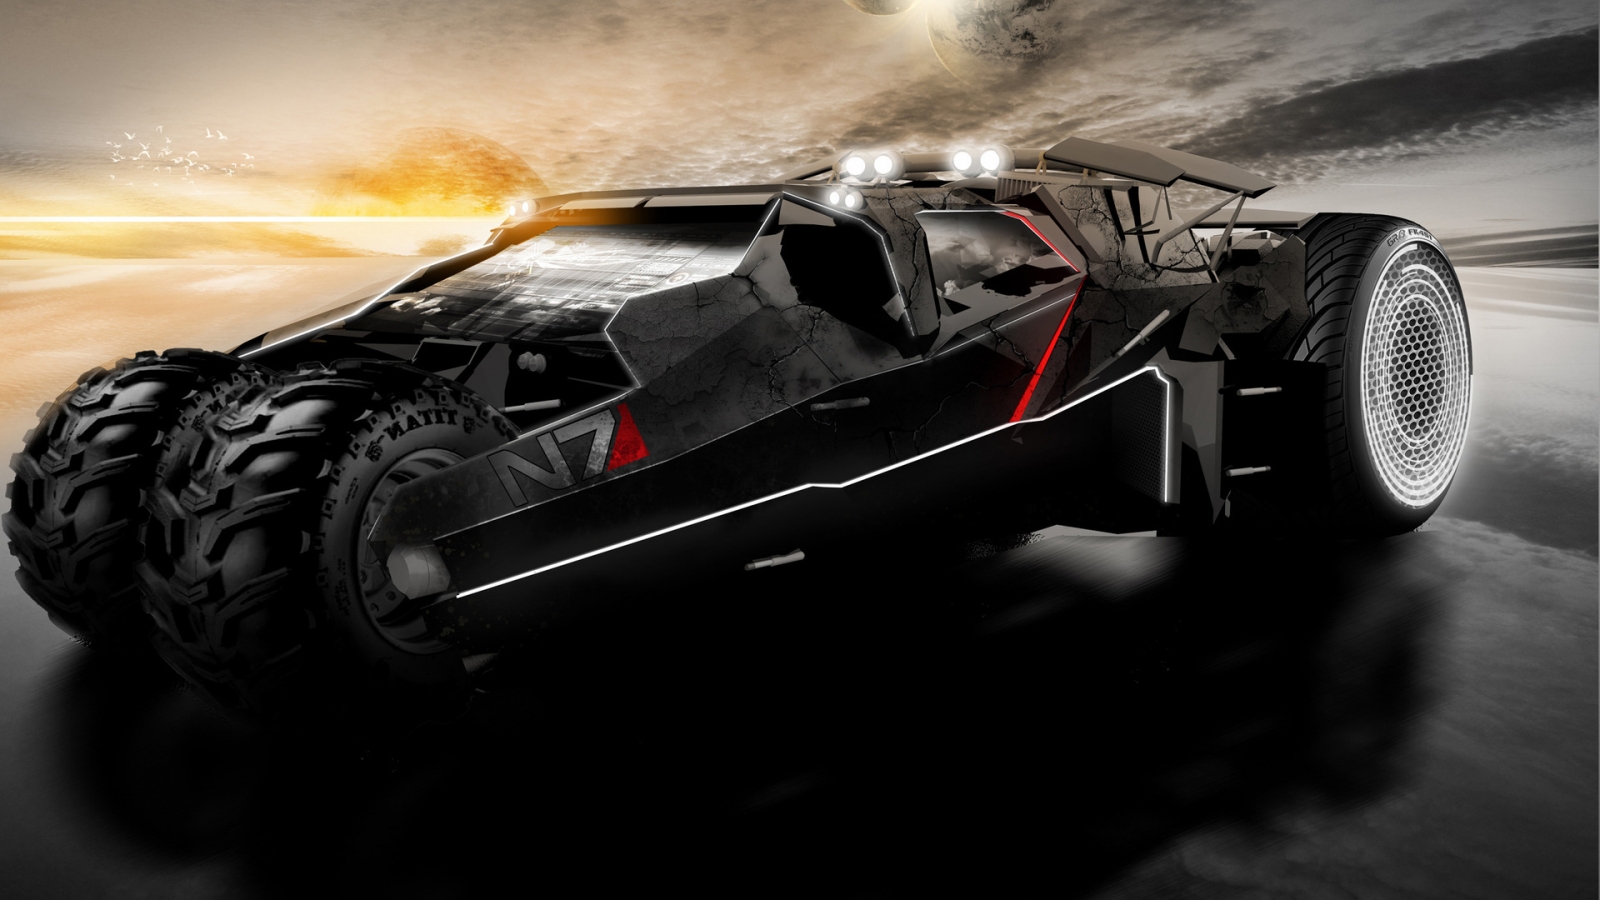 Mass Effect 2 Car for 1600 x 900 HDTV resolution